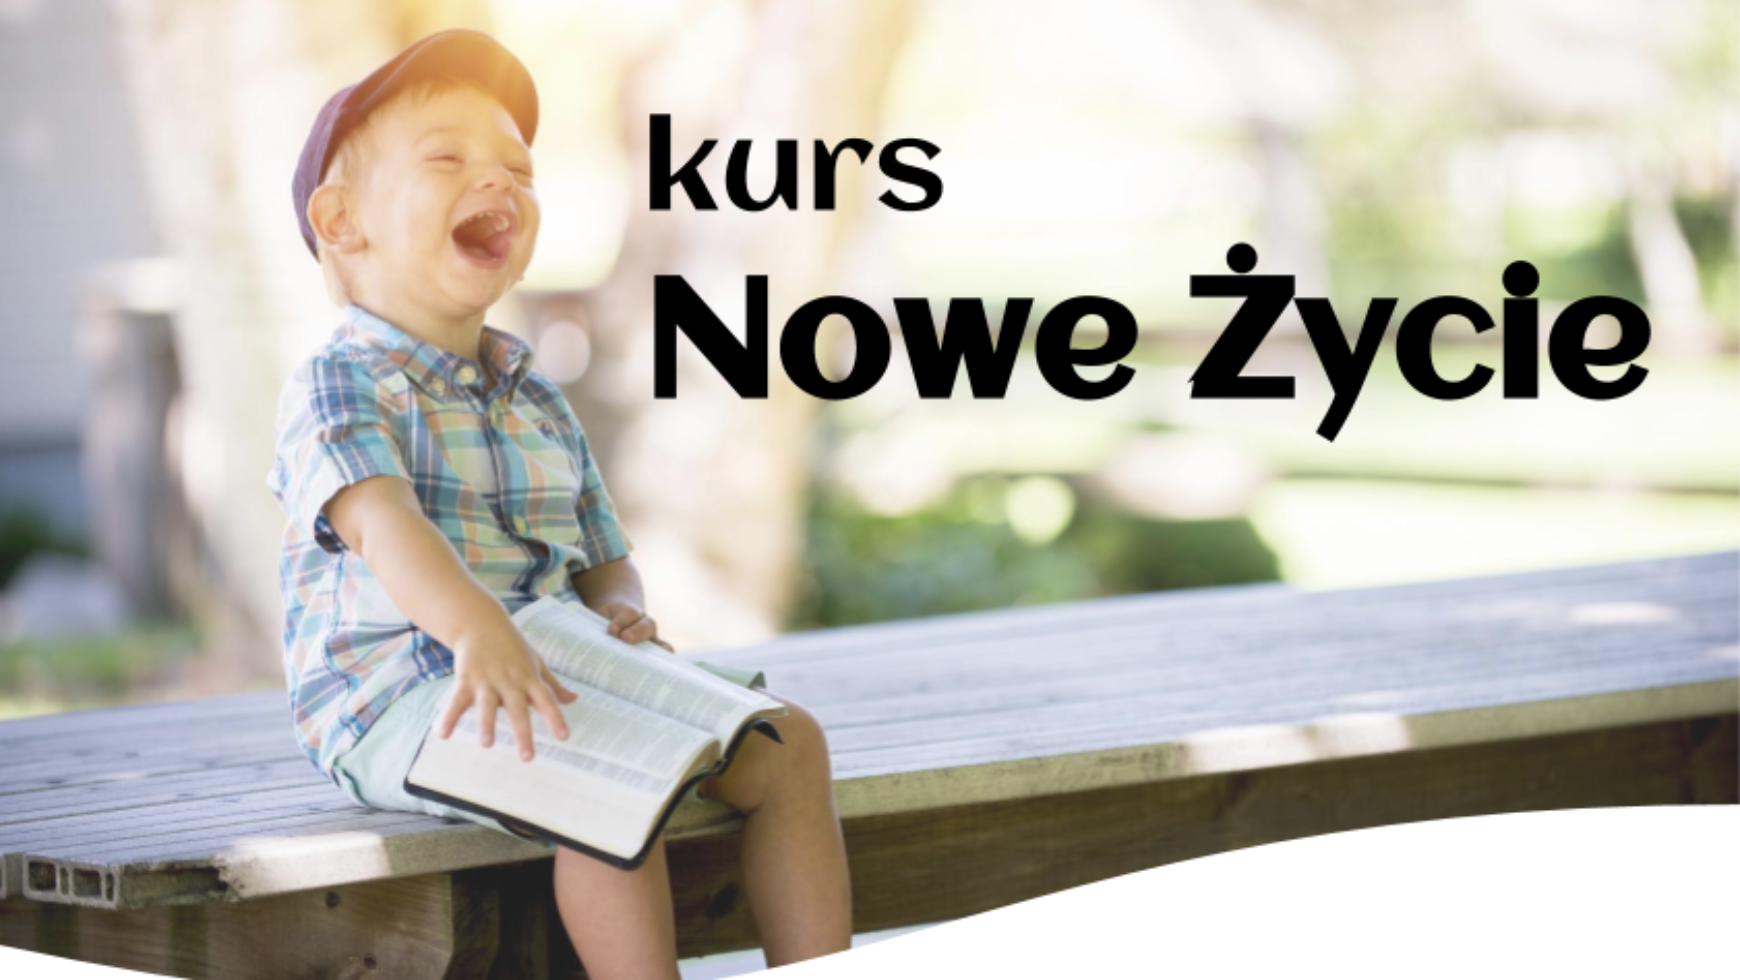 Kurs Nowe Życie w Czechowicach-Dziedzicach